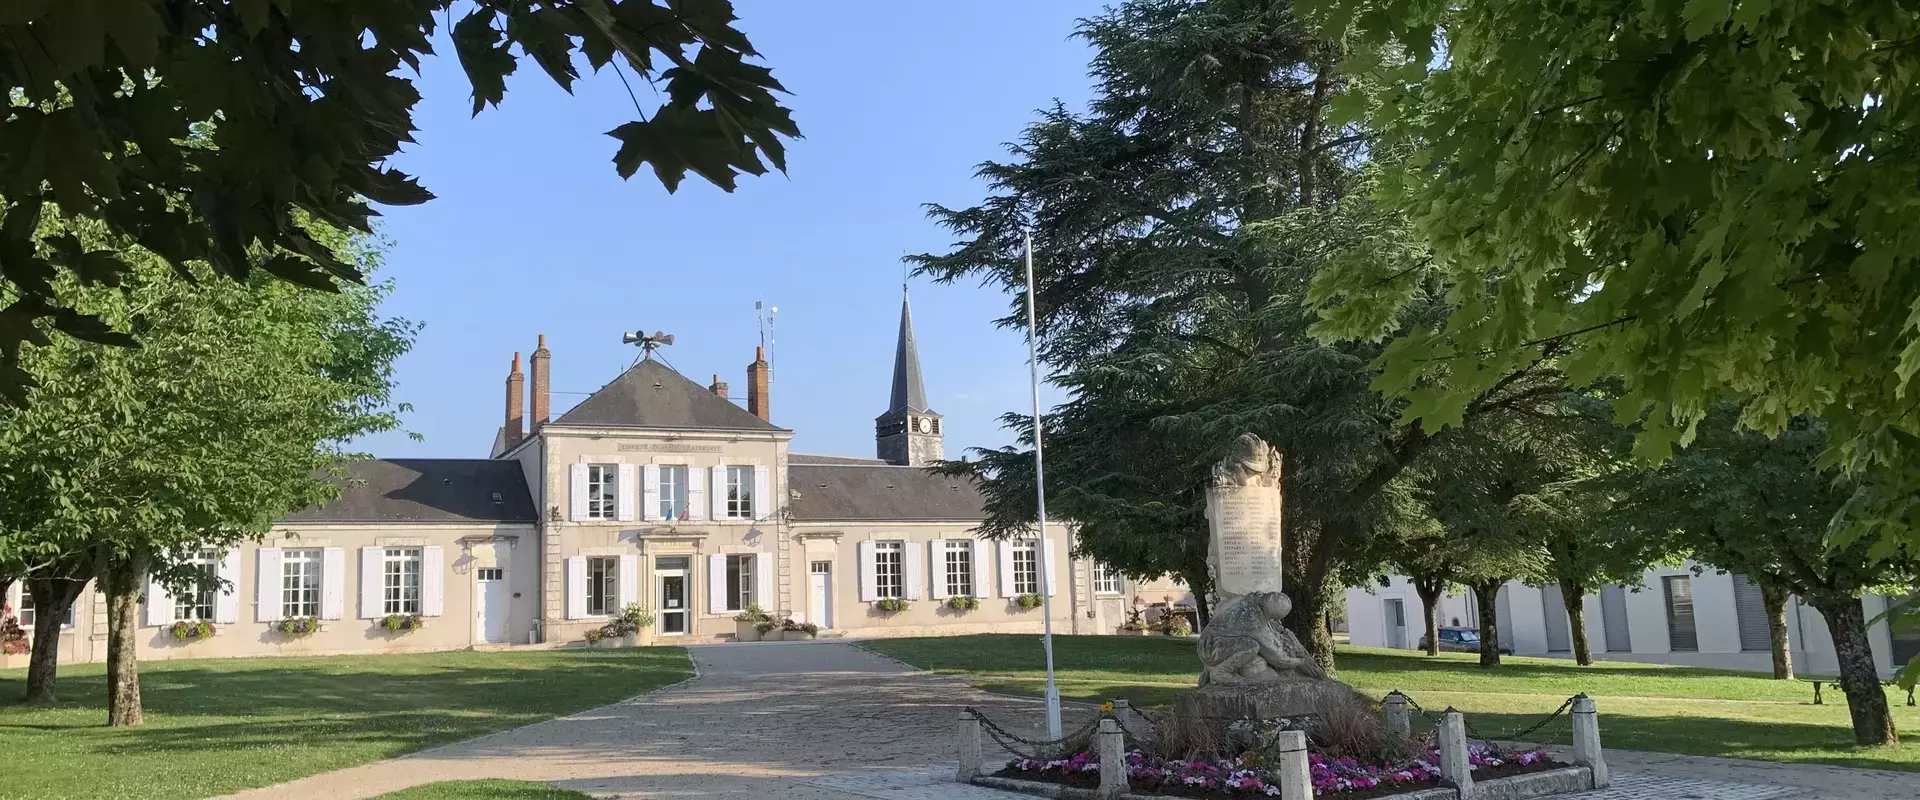 Les mentions légales du site de la commune de Saint-Ay (45) Loiret